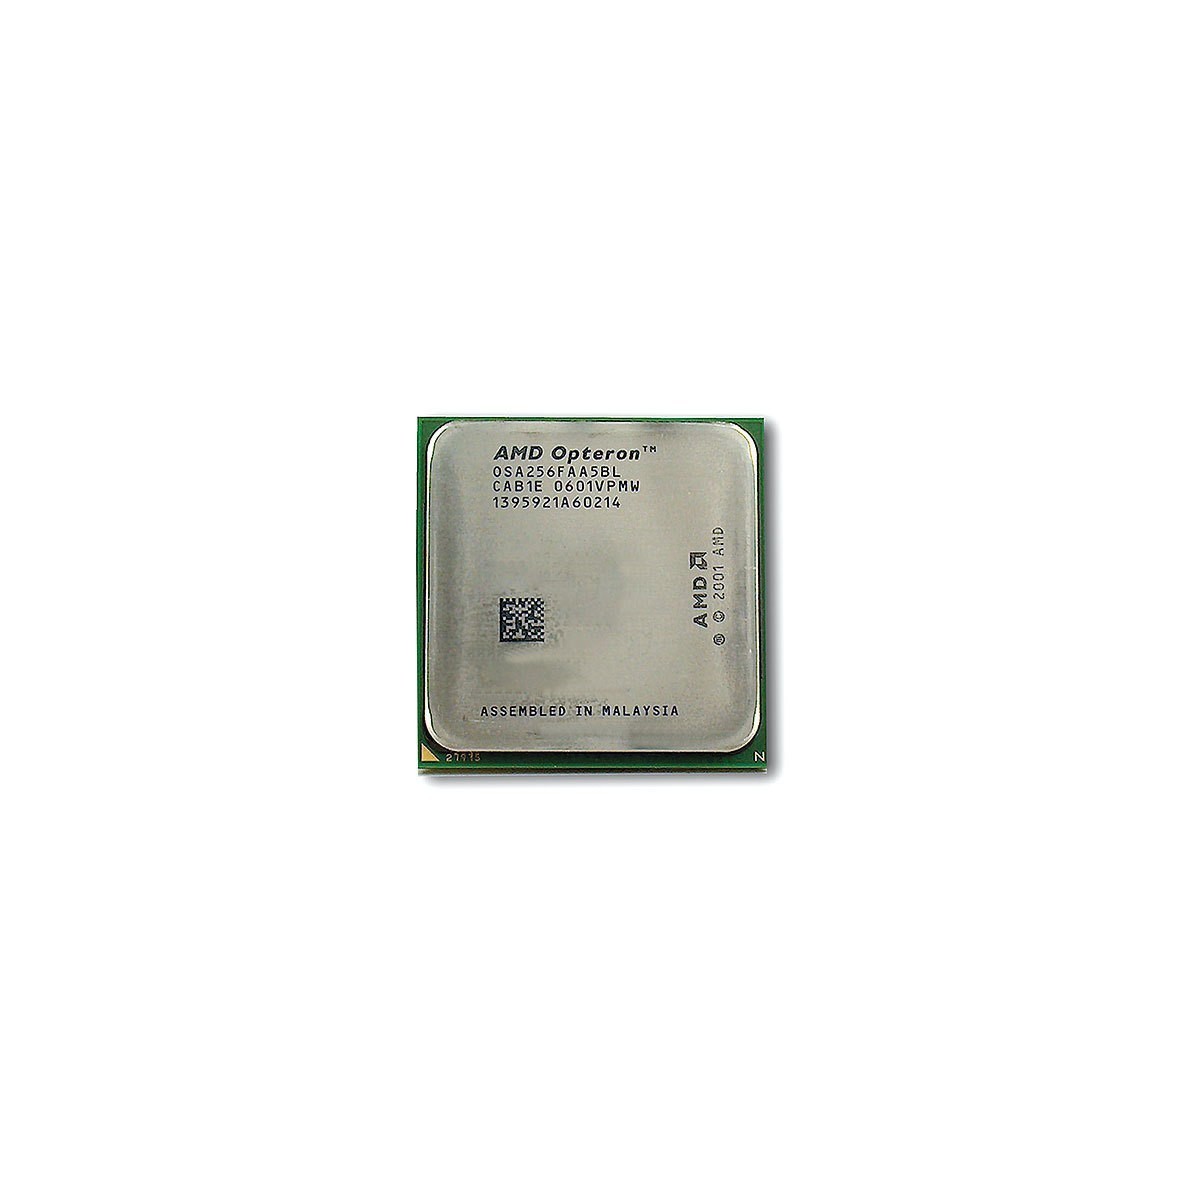 HPE BL465c G7 6272 - AMD Opteron - Socket G34 - Server/workstation - 32 nm - 2.1 GHz - 6400 GT/s